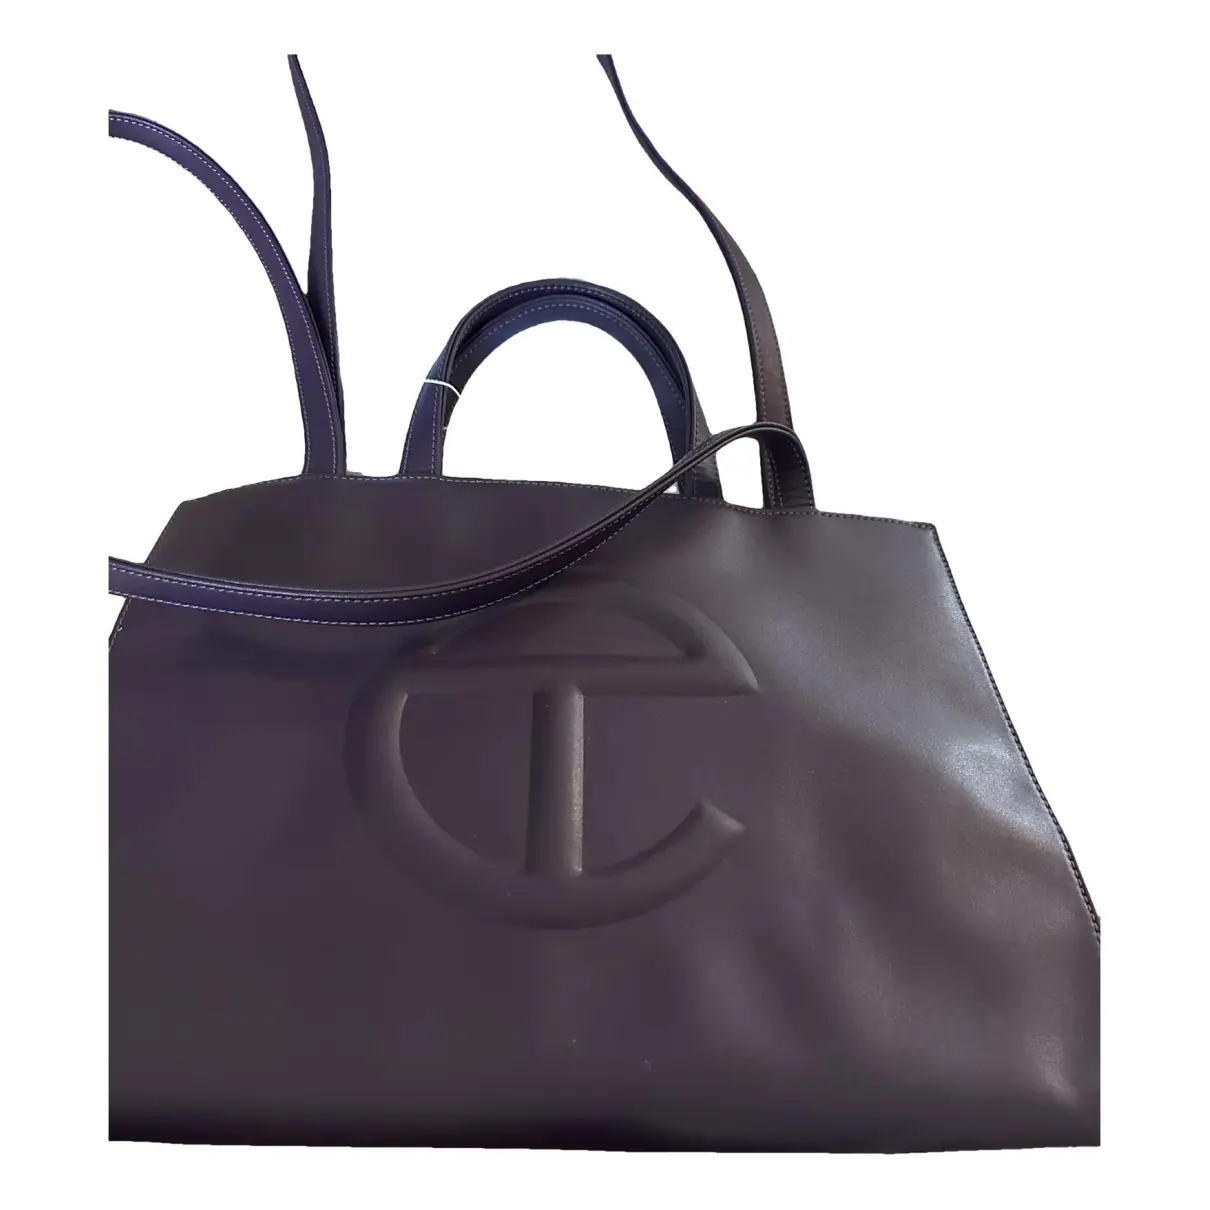 Medium Shopping Bag vegan leather handbag